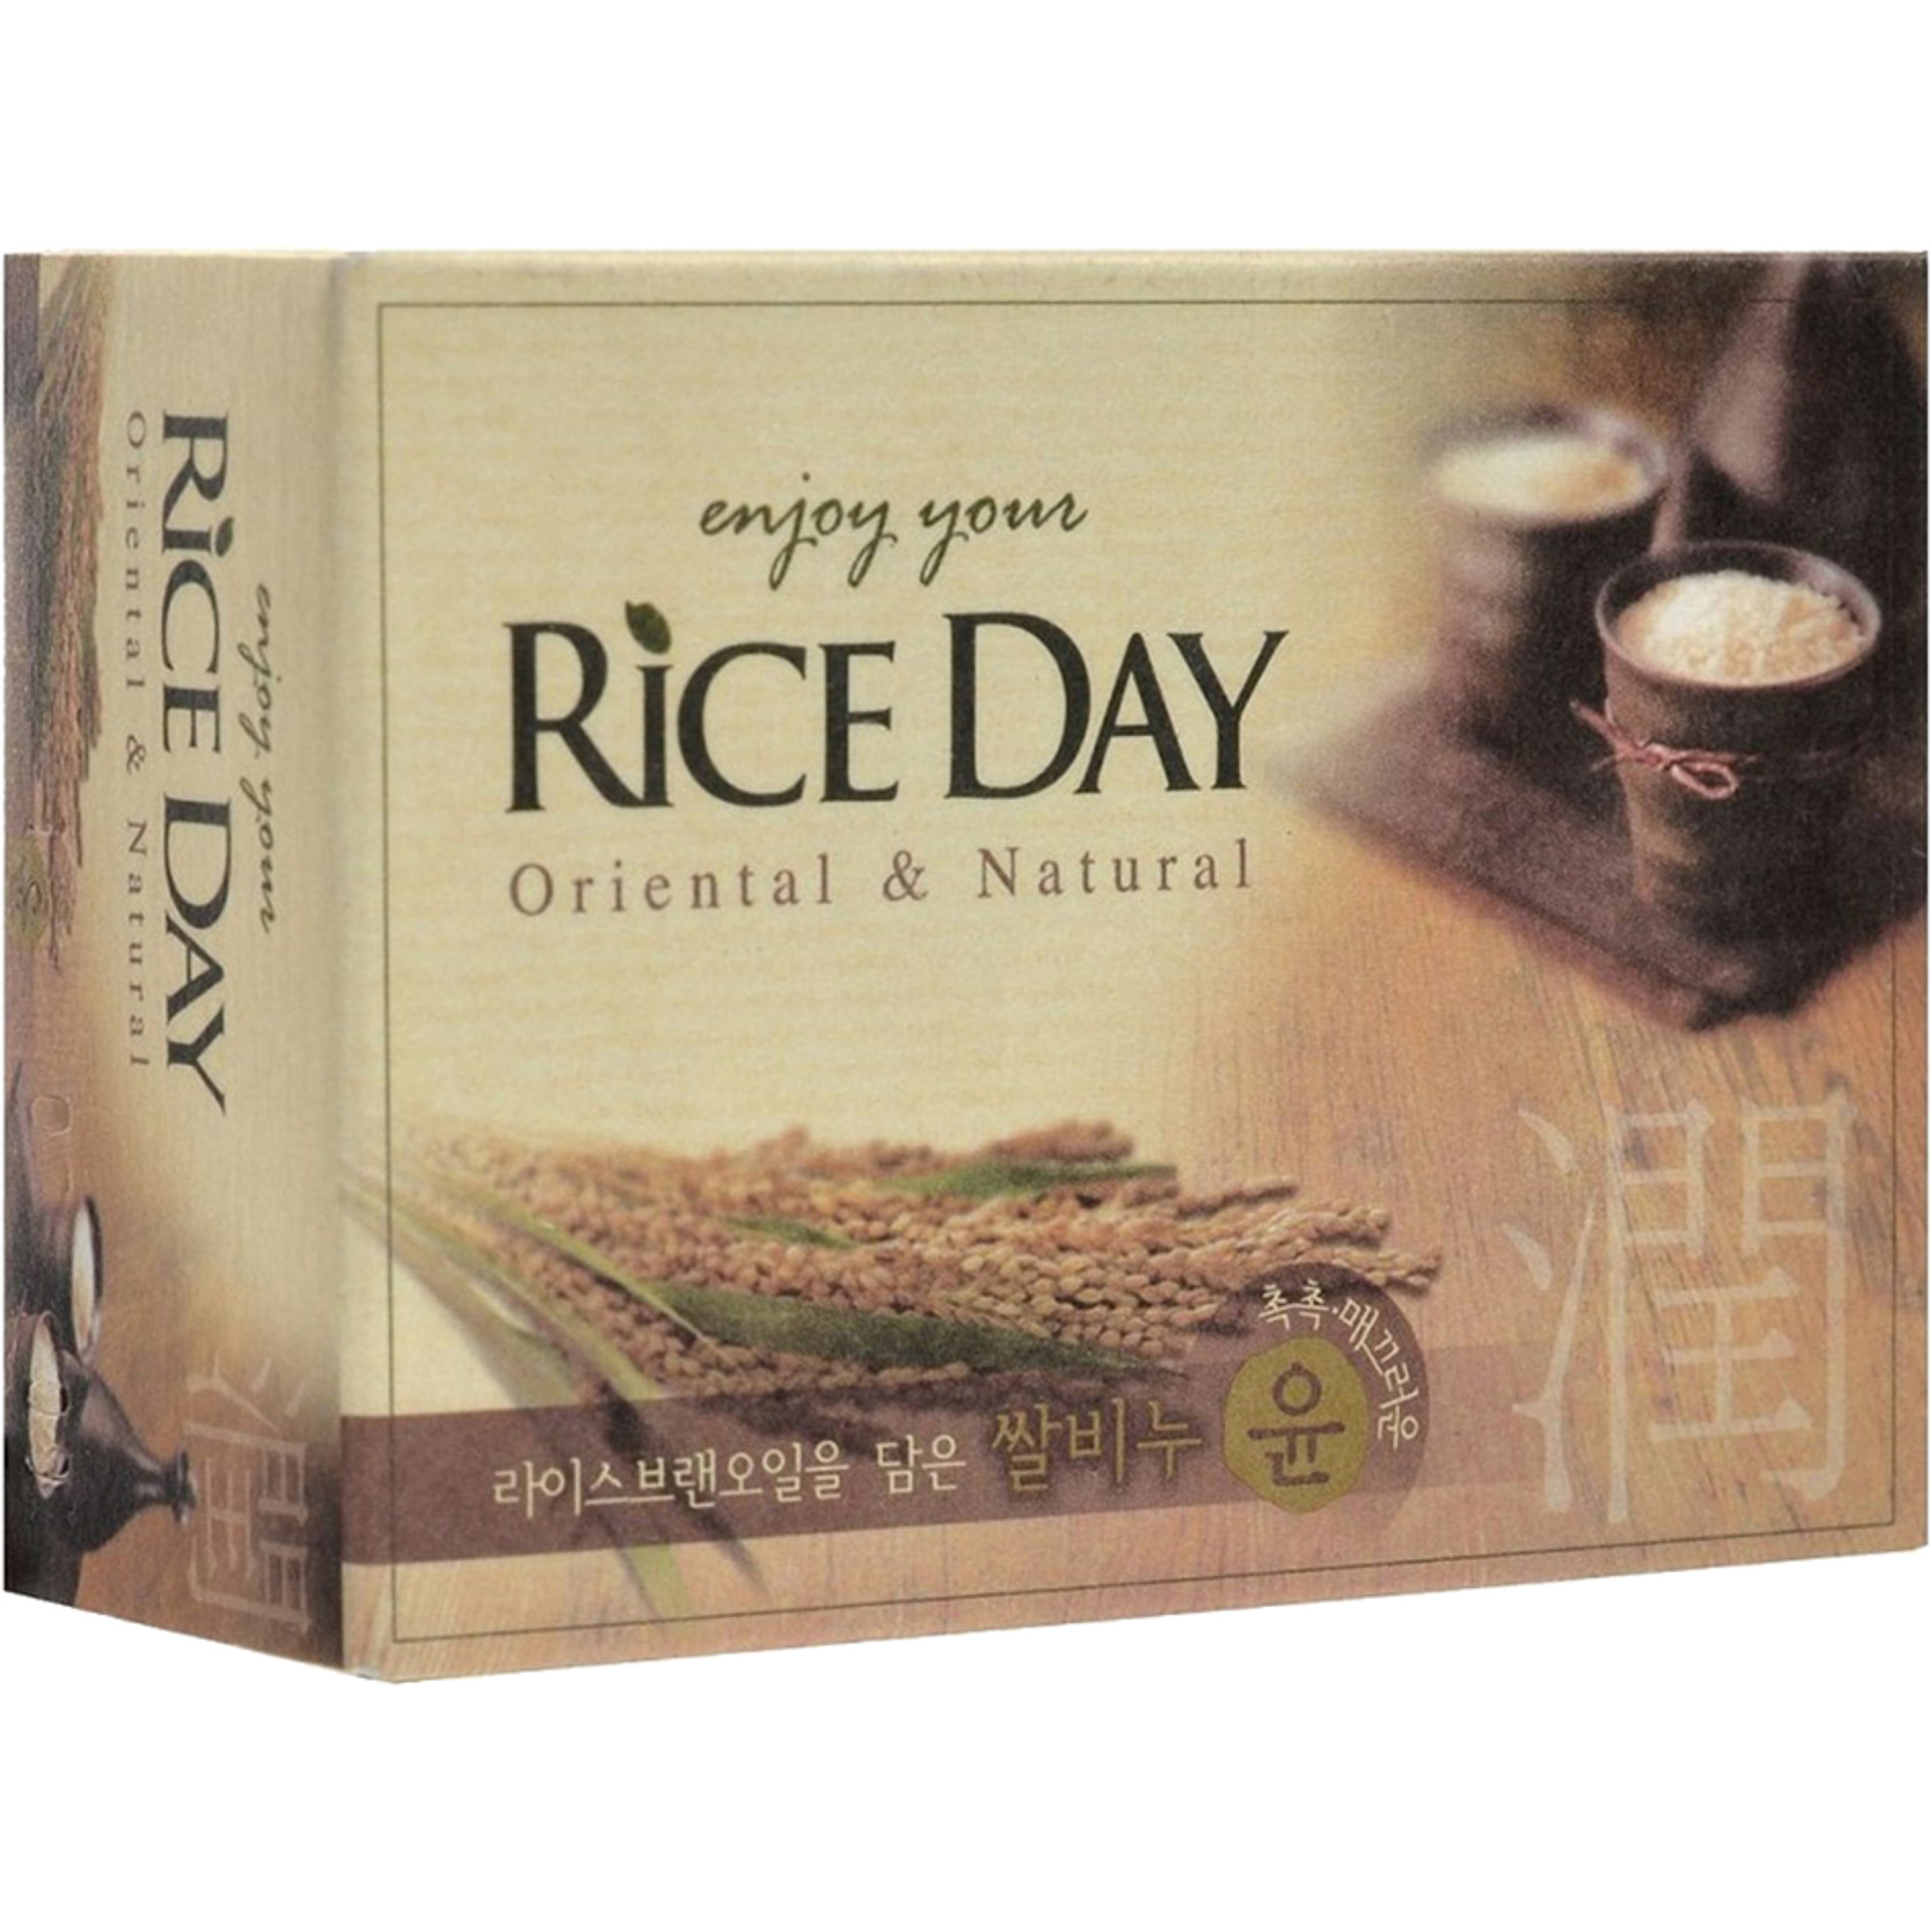 Мыло CJ Lion Rice Day с экстрактом рисовых отрубей 100 г мыло cj lion rice day с экстрактом лотоса 100 г